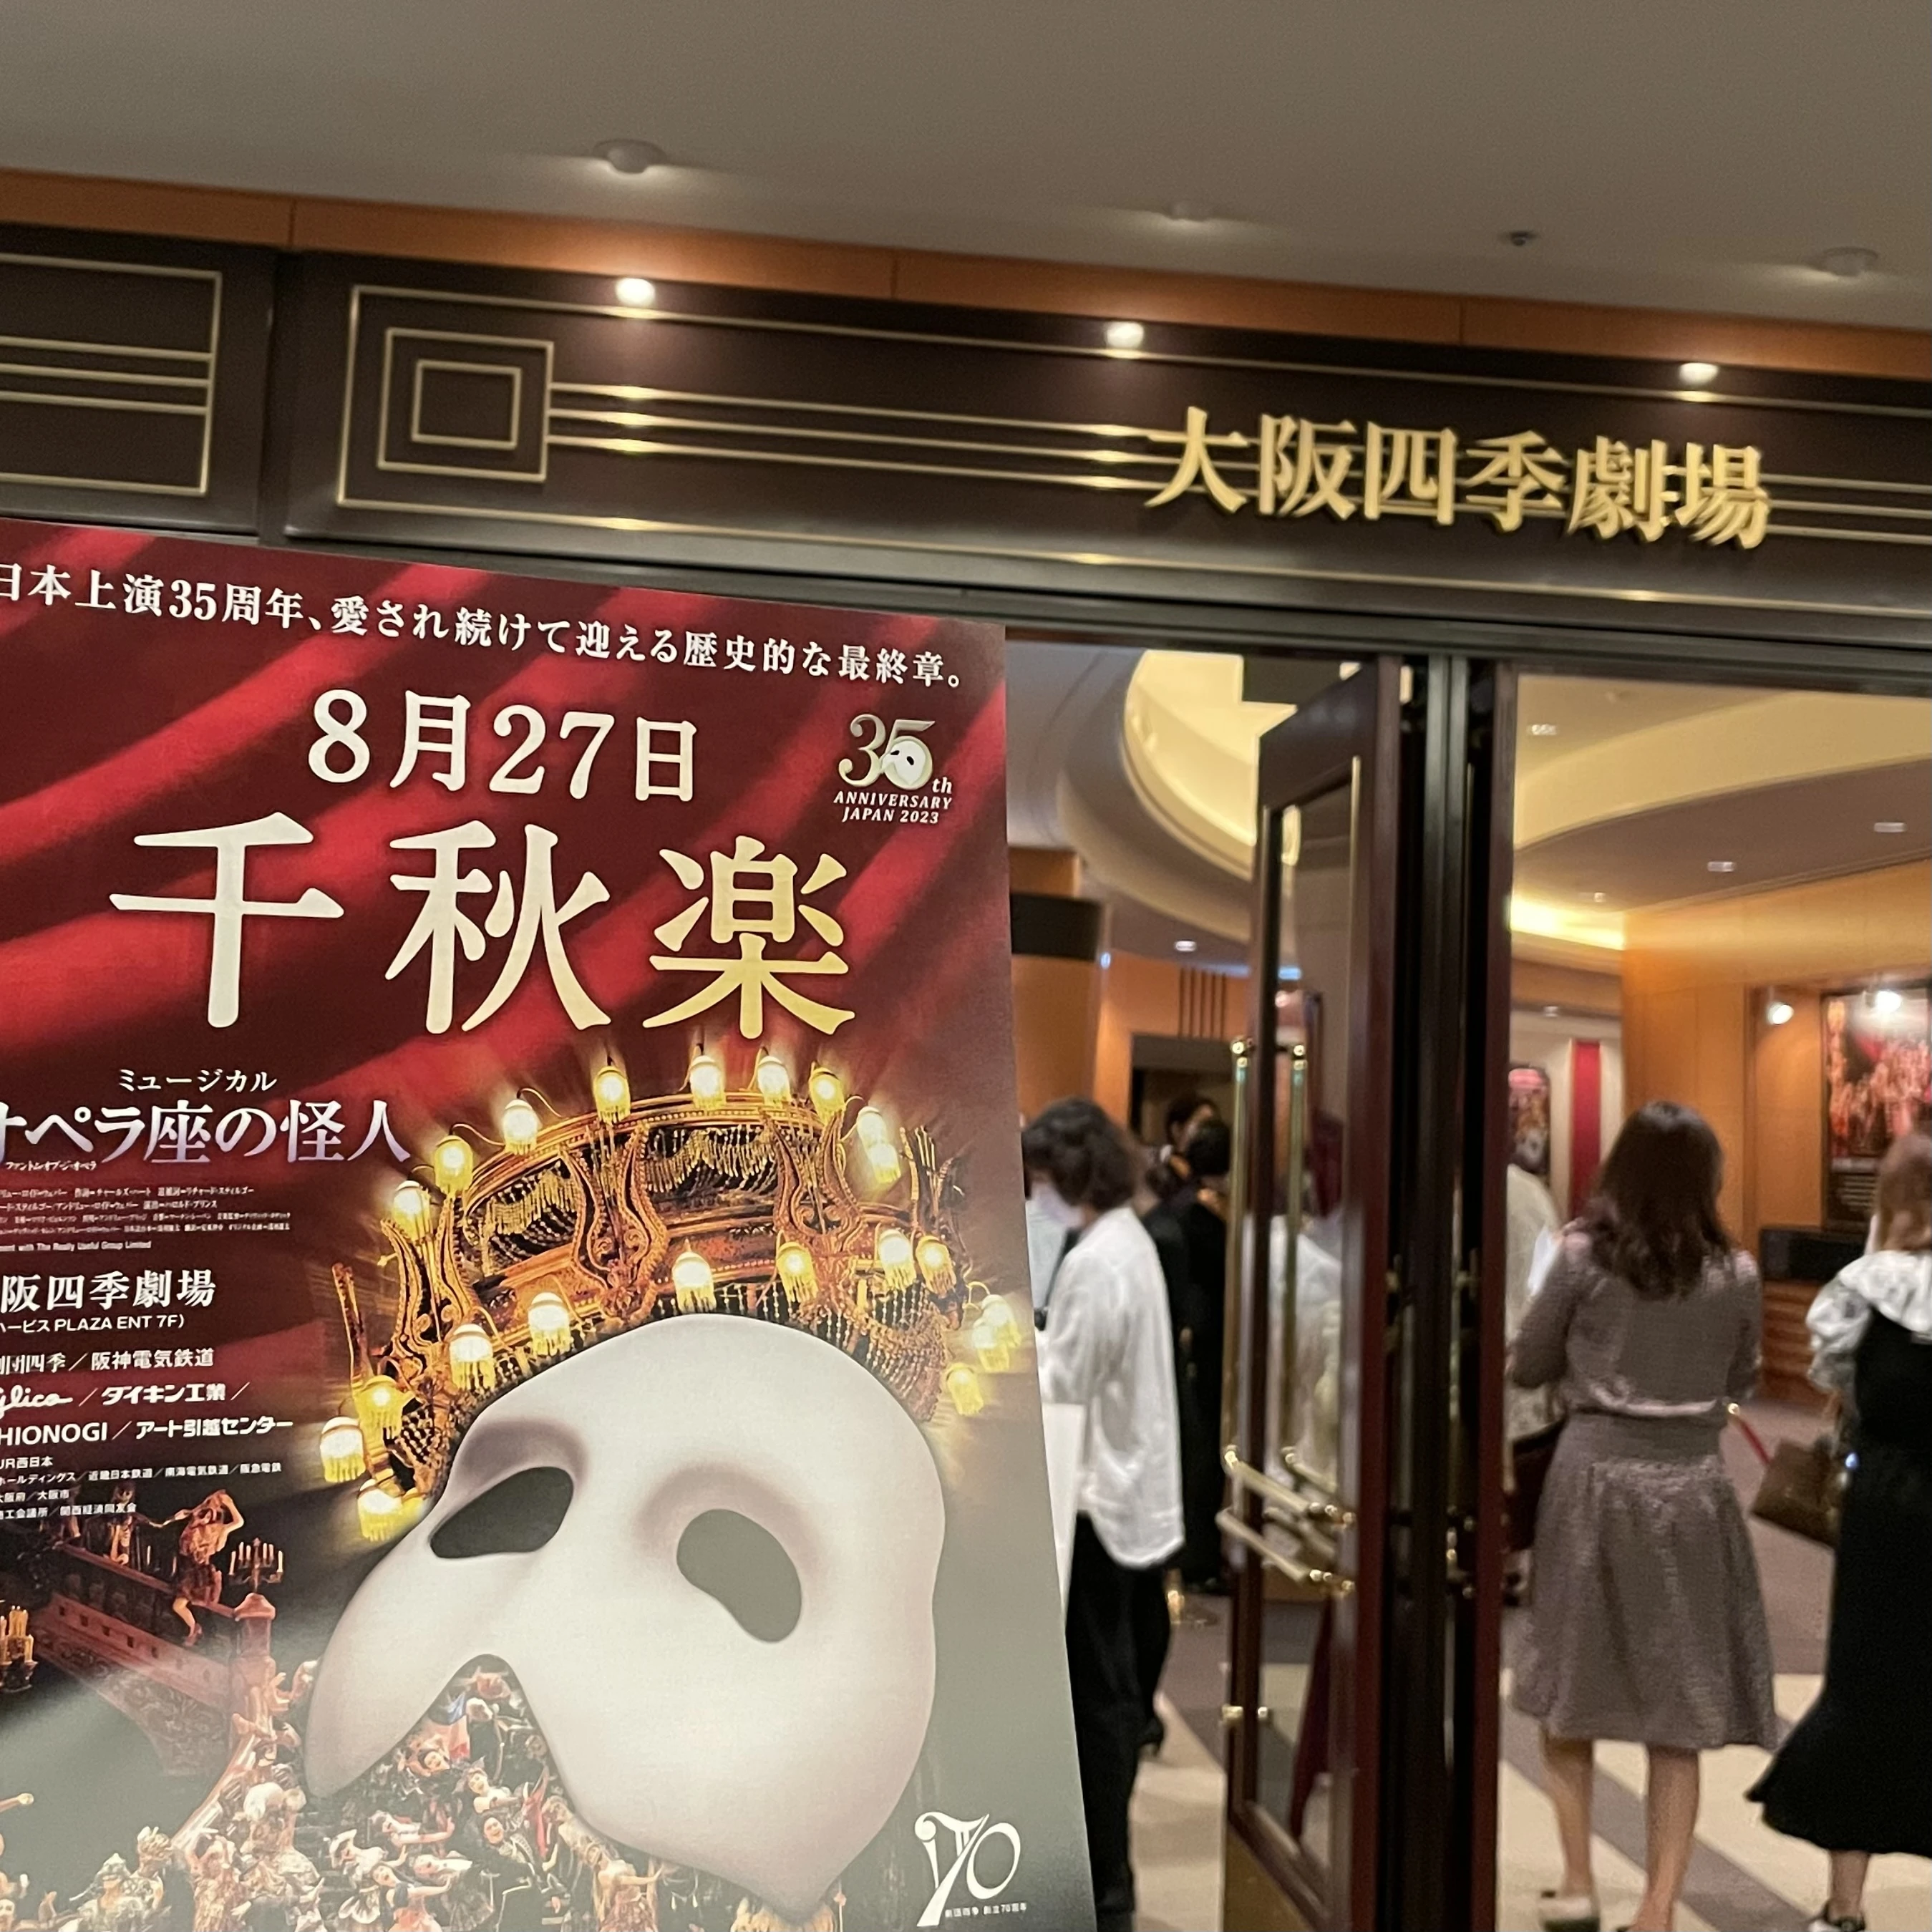 大阪四季劇場 入口 ミュージカル「オペラ座の怪人」チラシを掲げて